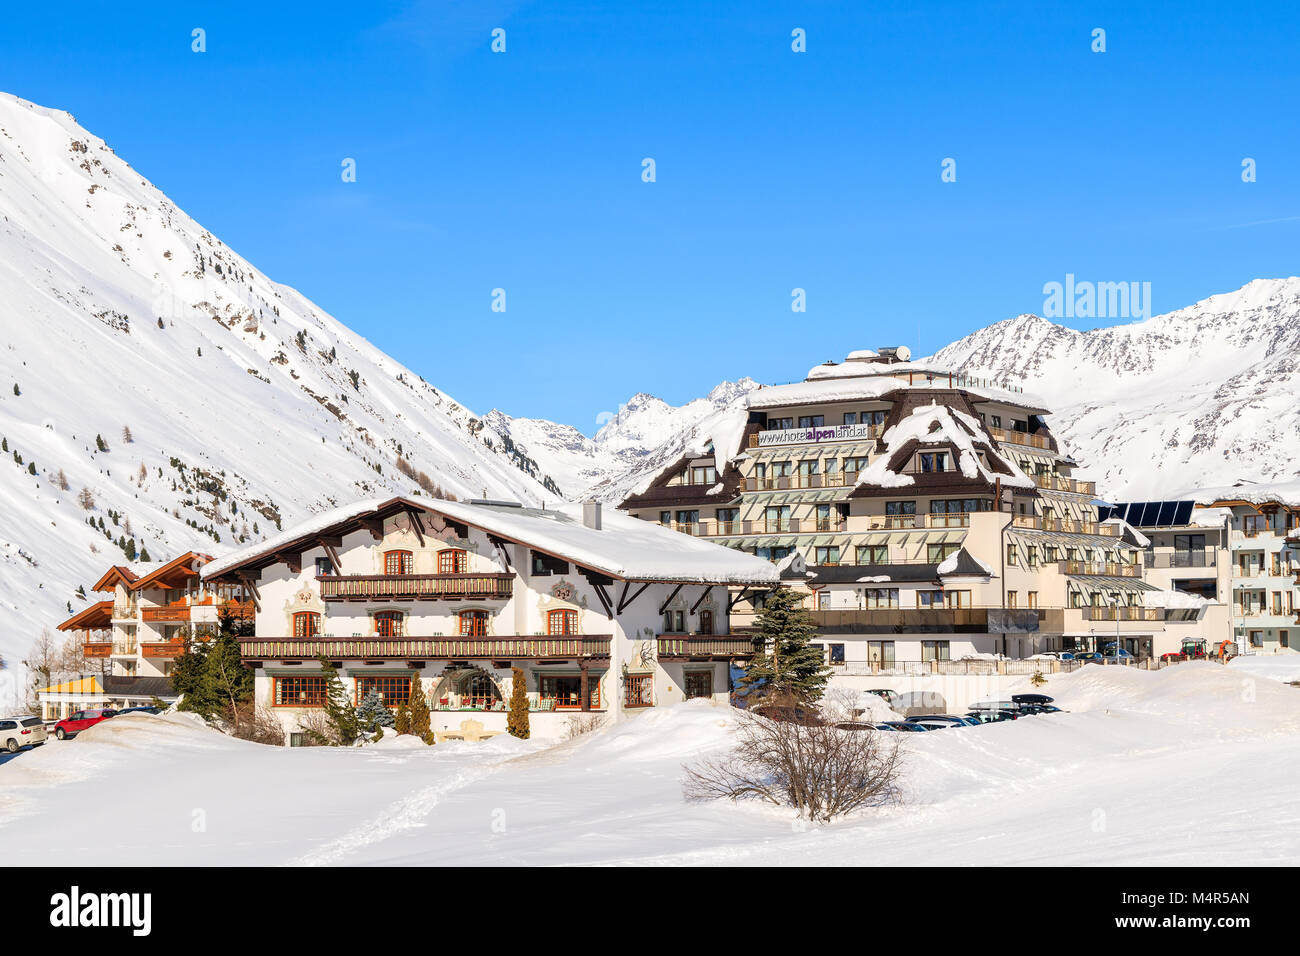 HOCHGURGL VILLAGE, AUSTRIA - Jan 30, 2018: pueblo de montaña con hoteles y casas en la bella zona de esquí de Hochgurgl-Obergurgl, Tirol, Austria. Foto de stock